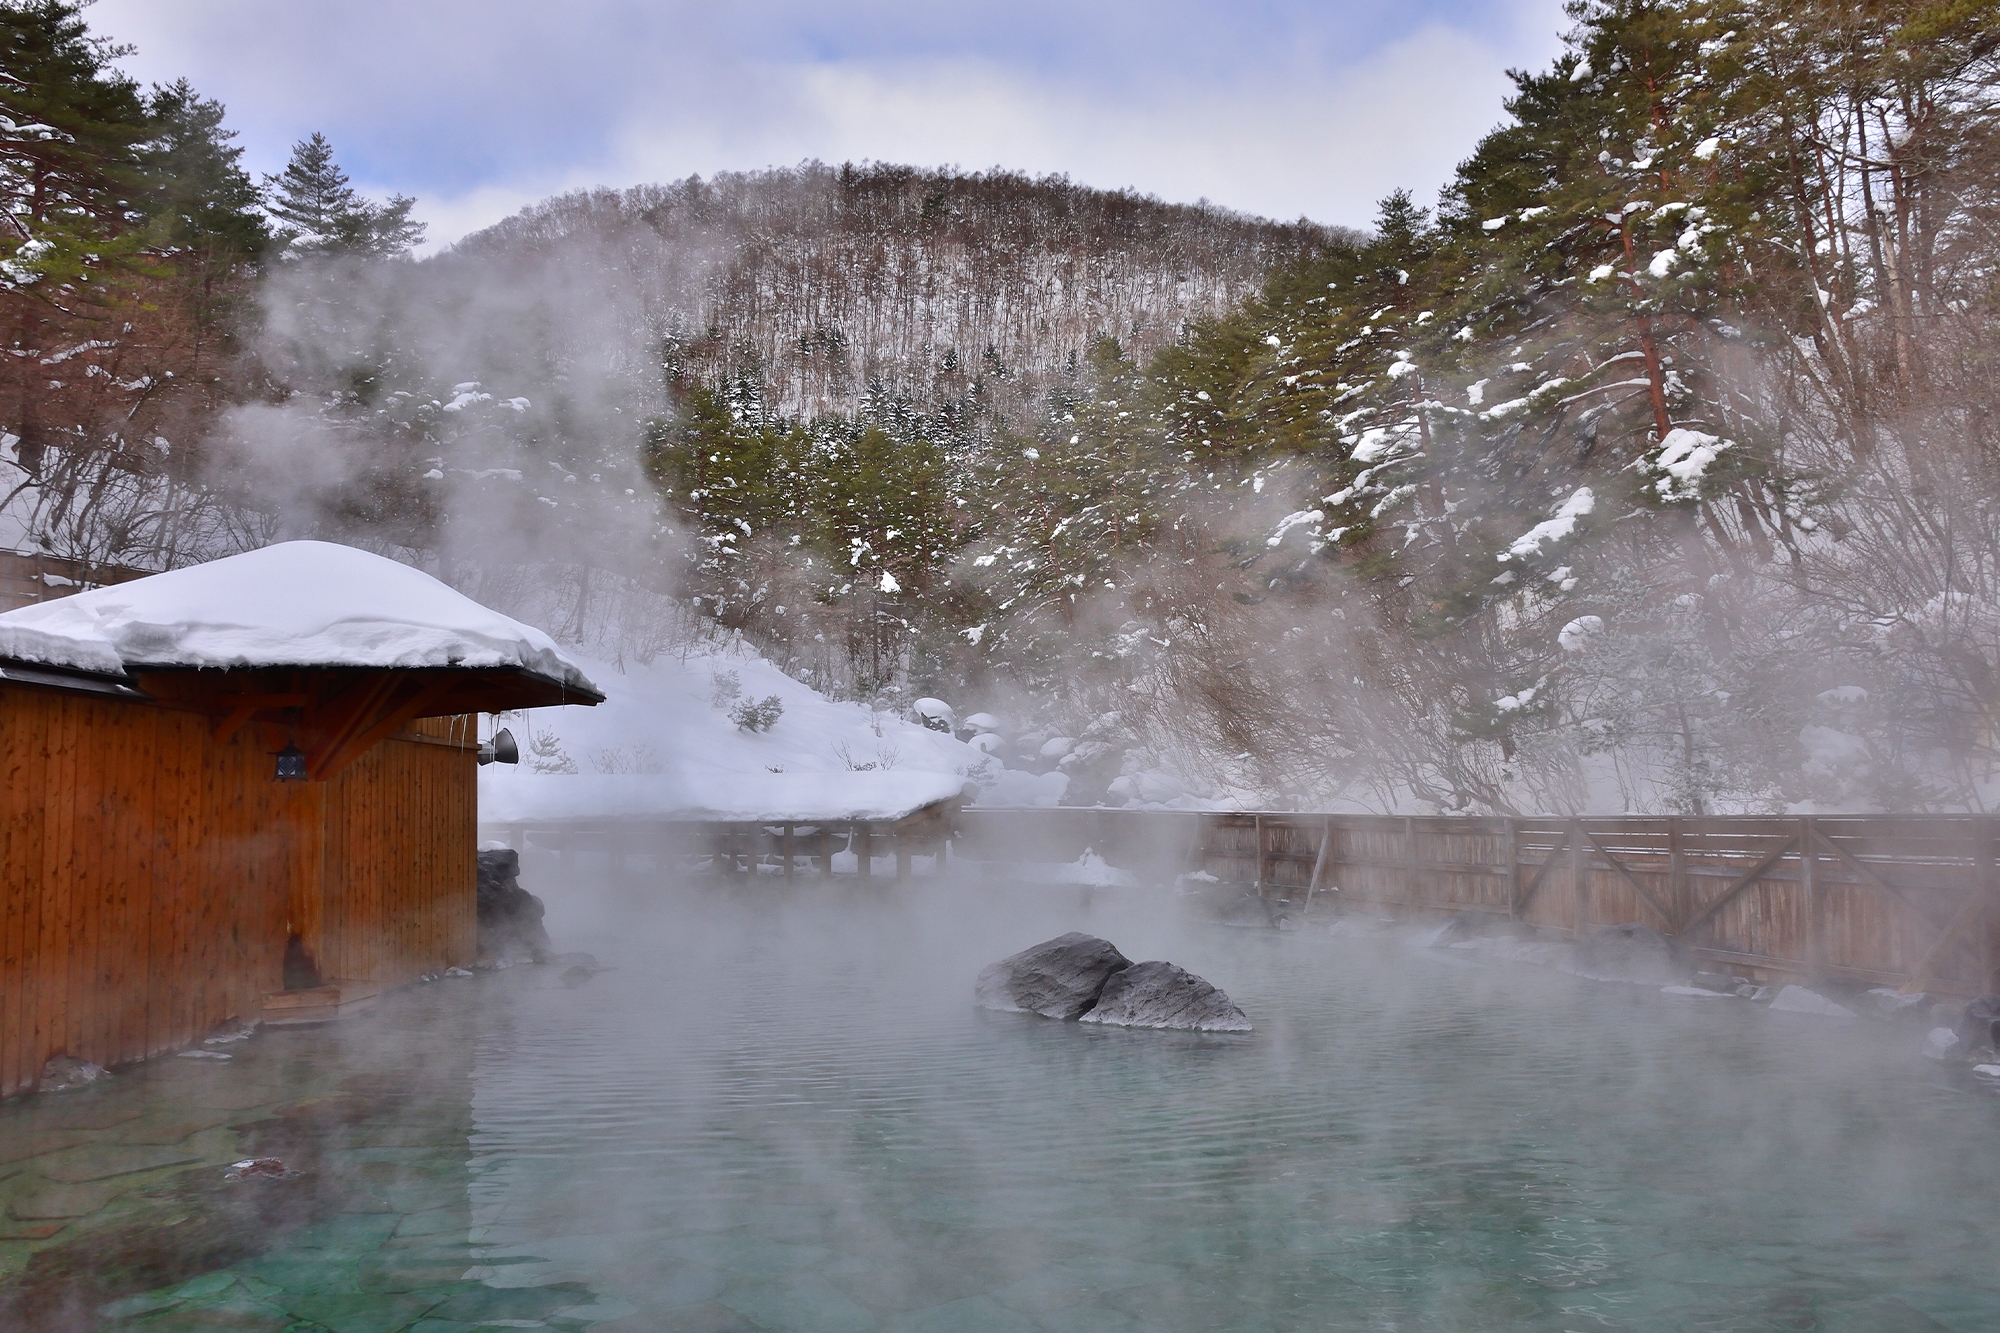 Sainokawara Open-Air Bath